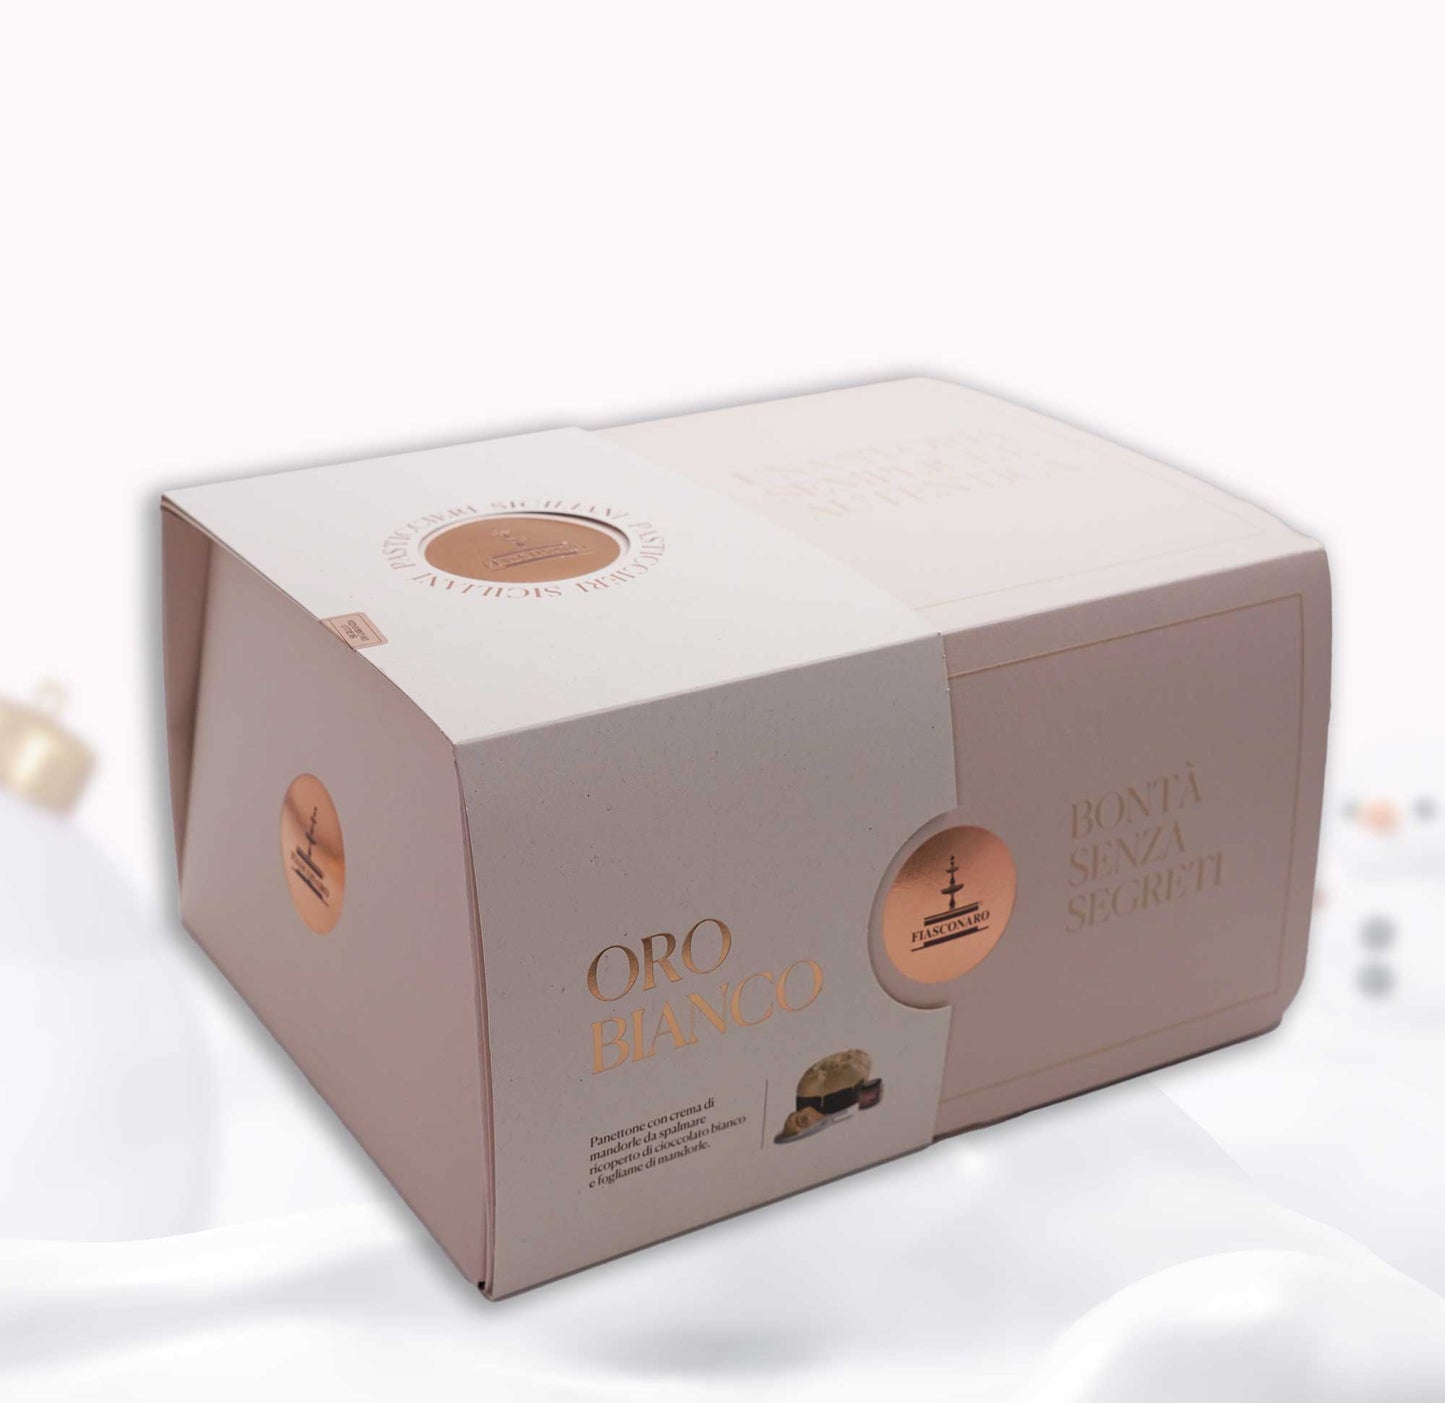 Fiasconaro ORO Bianco 820g Panettone w/ Almond Spread 180g - Prime Gourmet Online